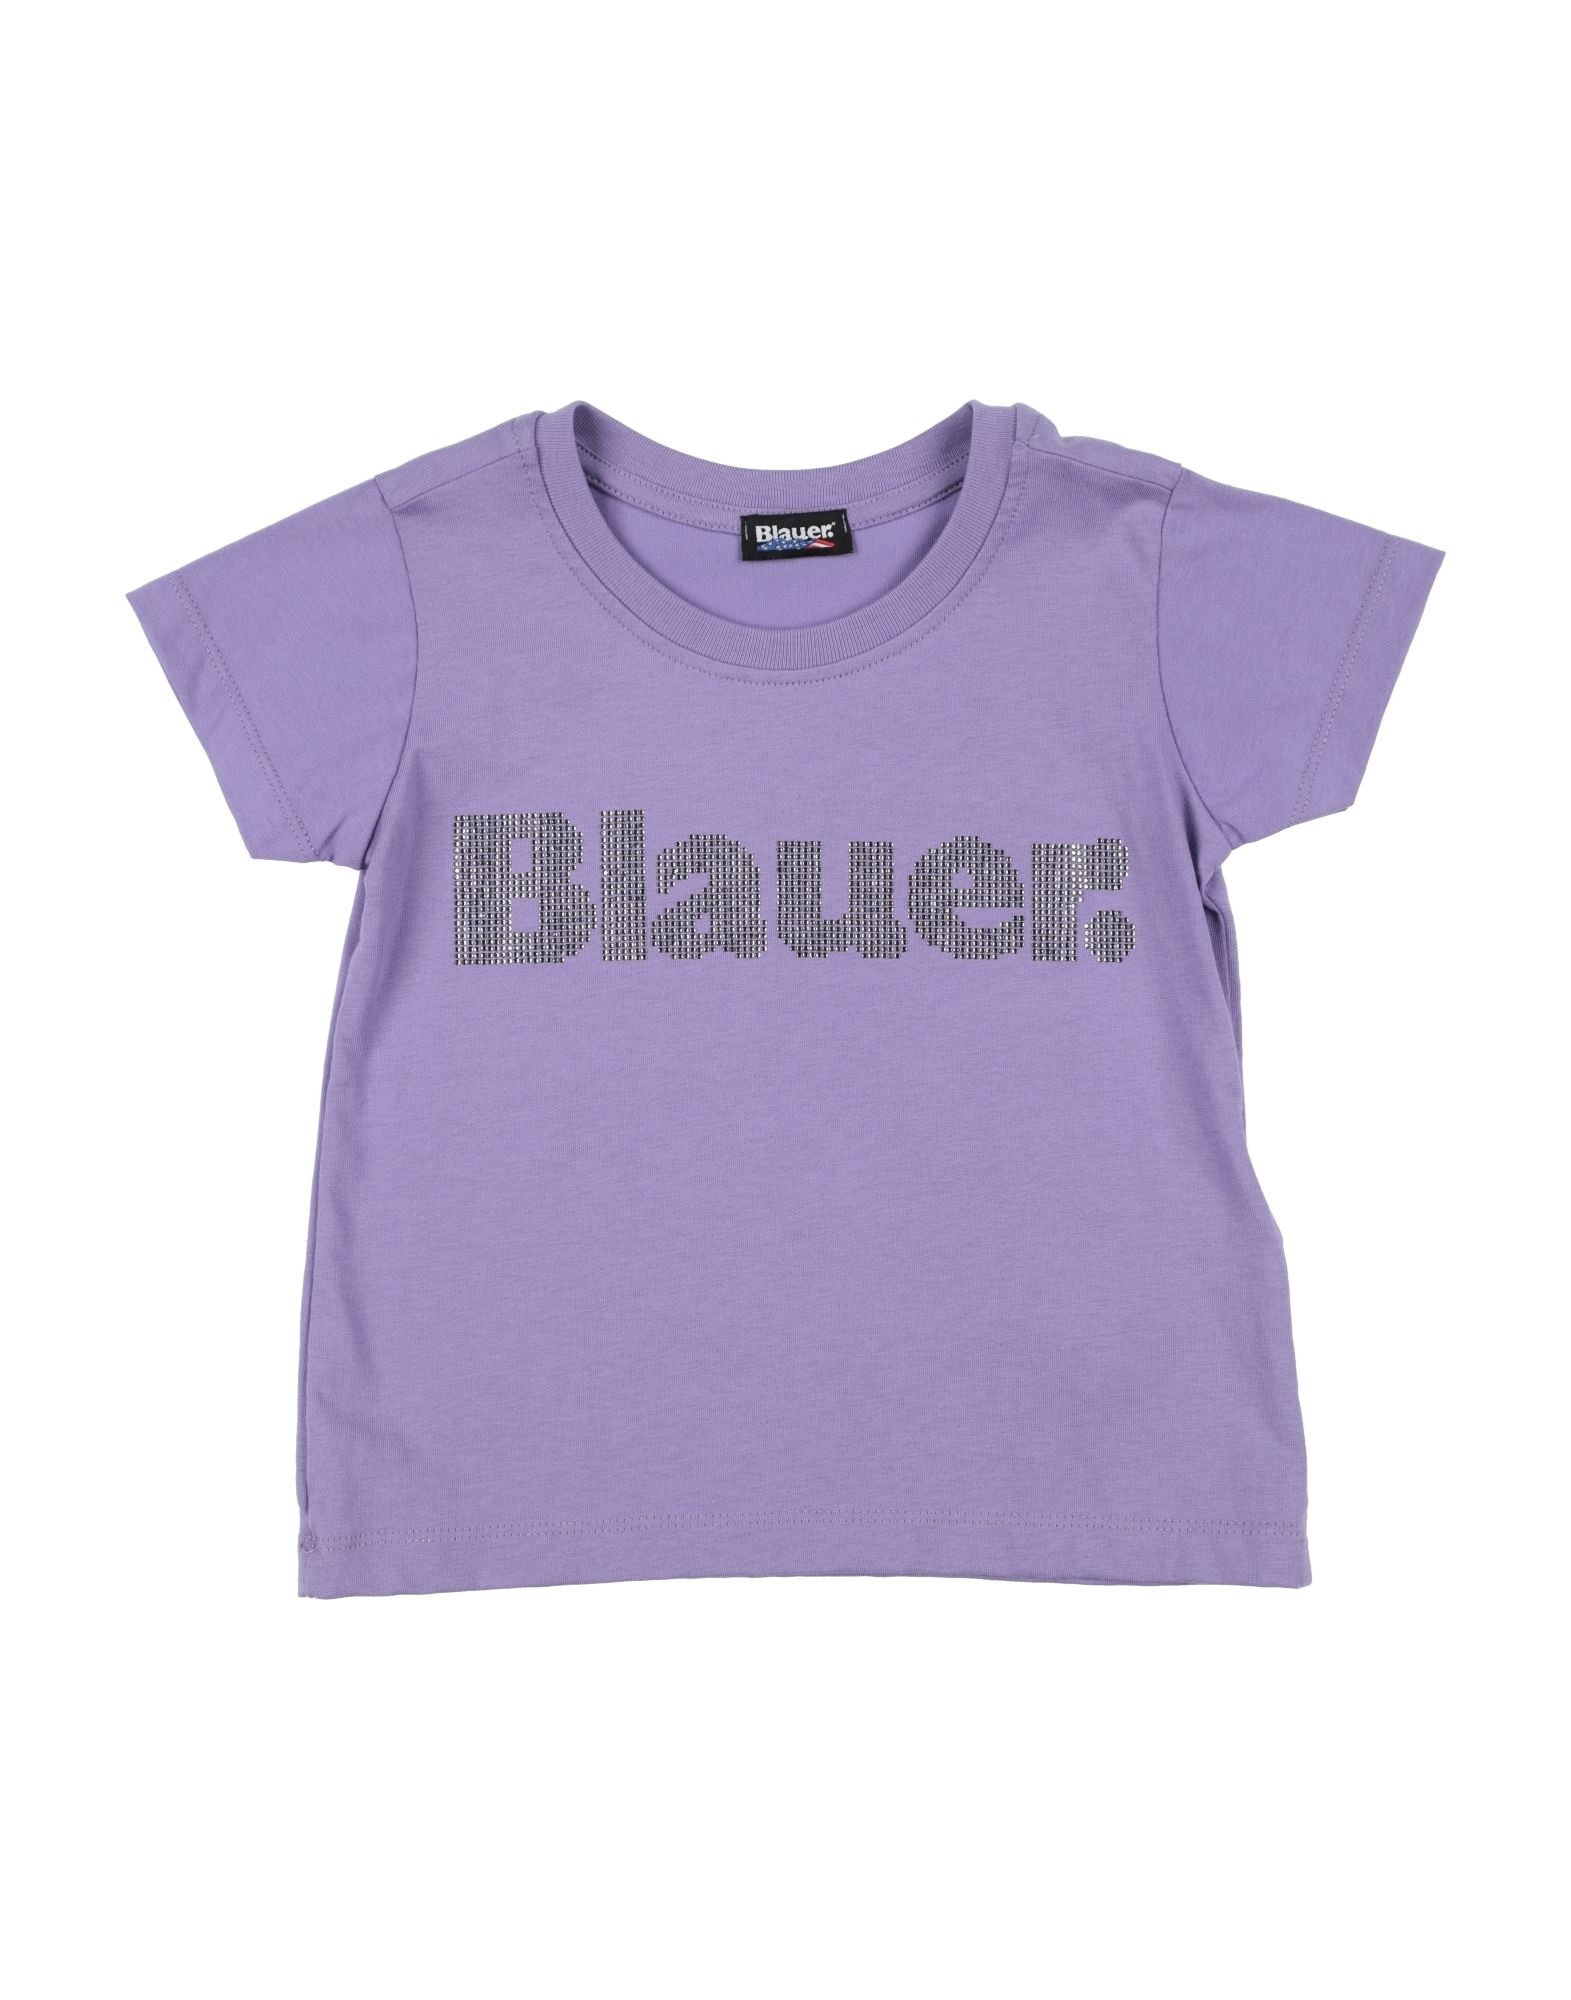 BLAUER T-shirts Kinder Flieder von BLAUER